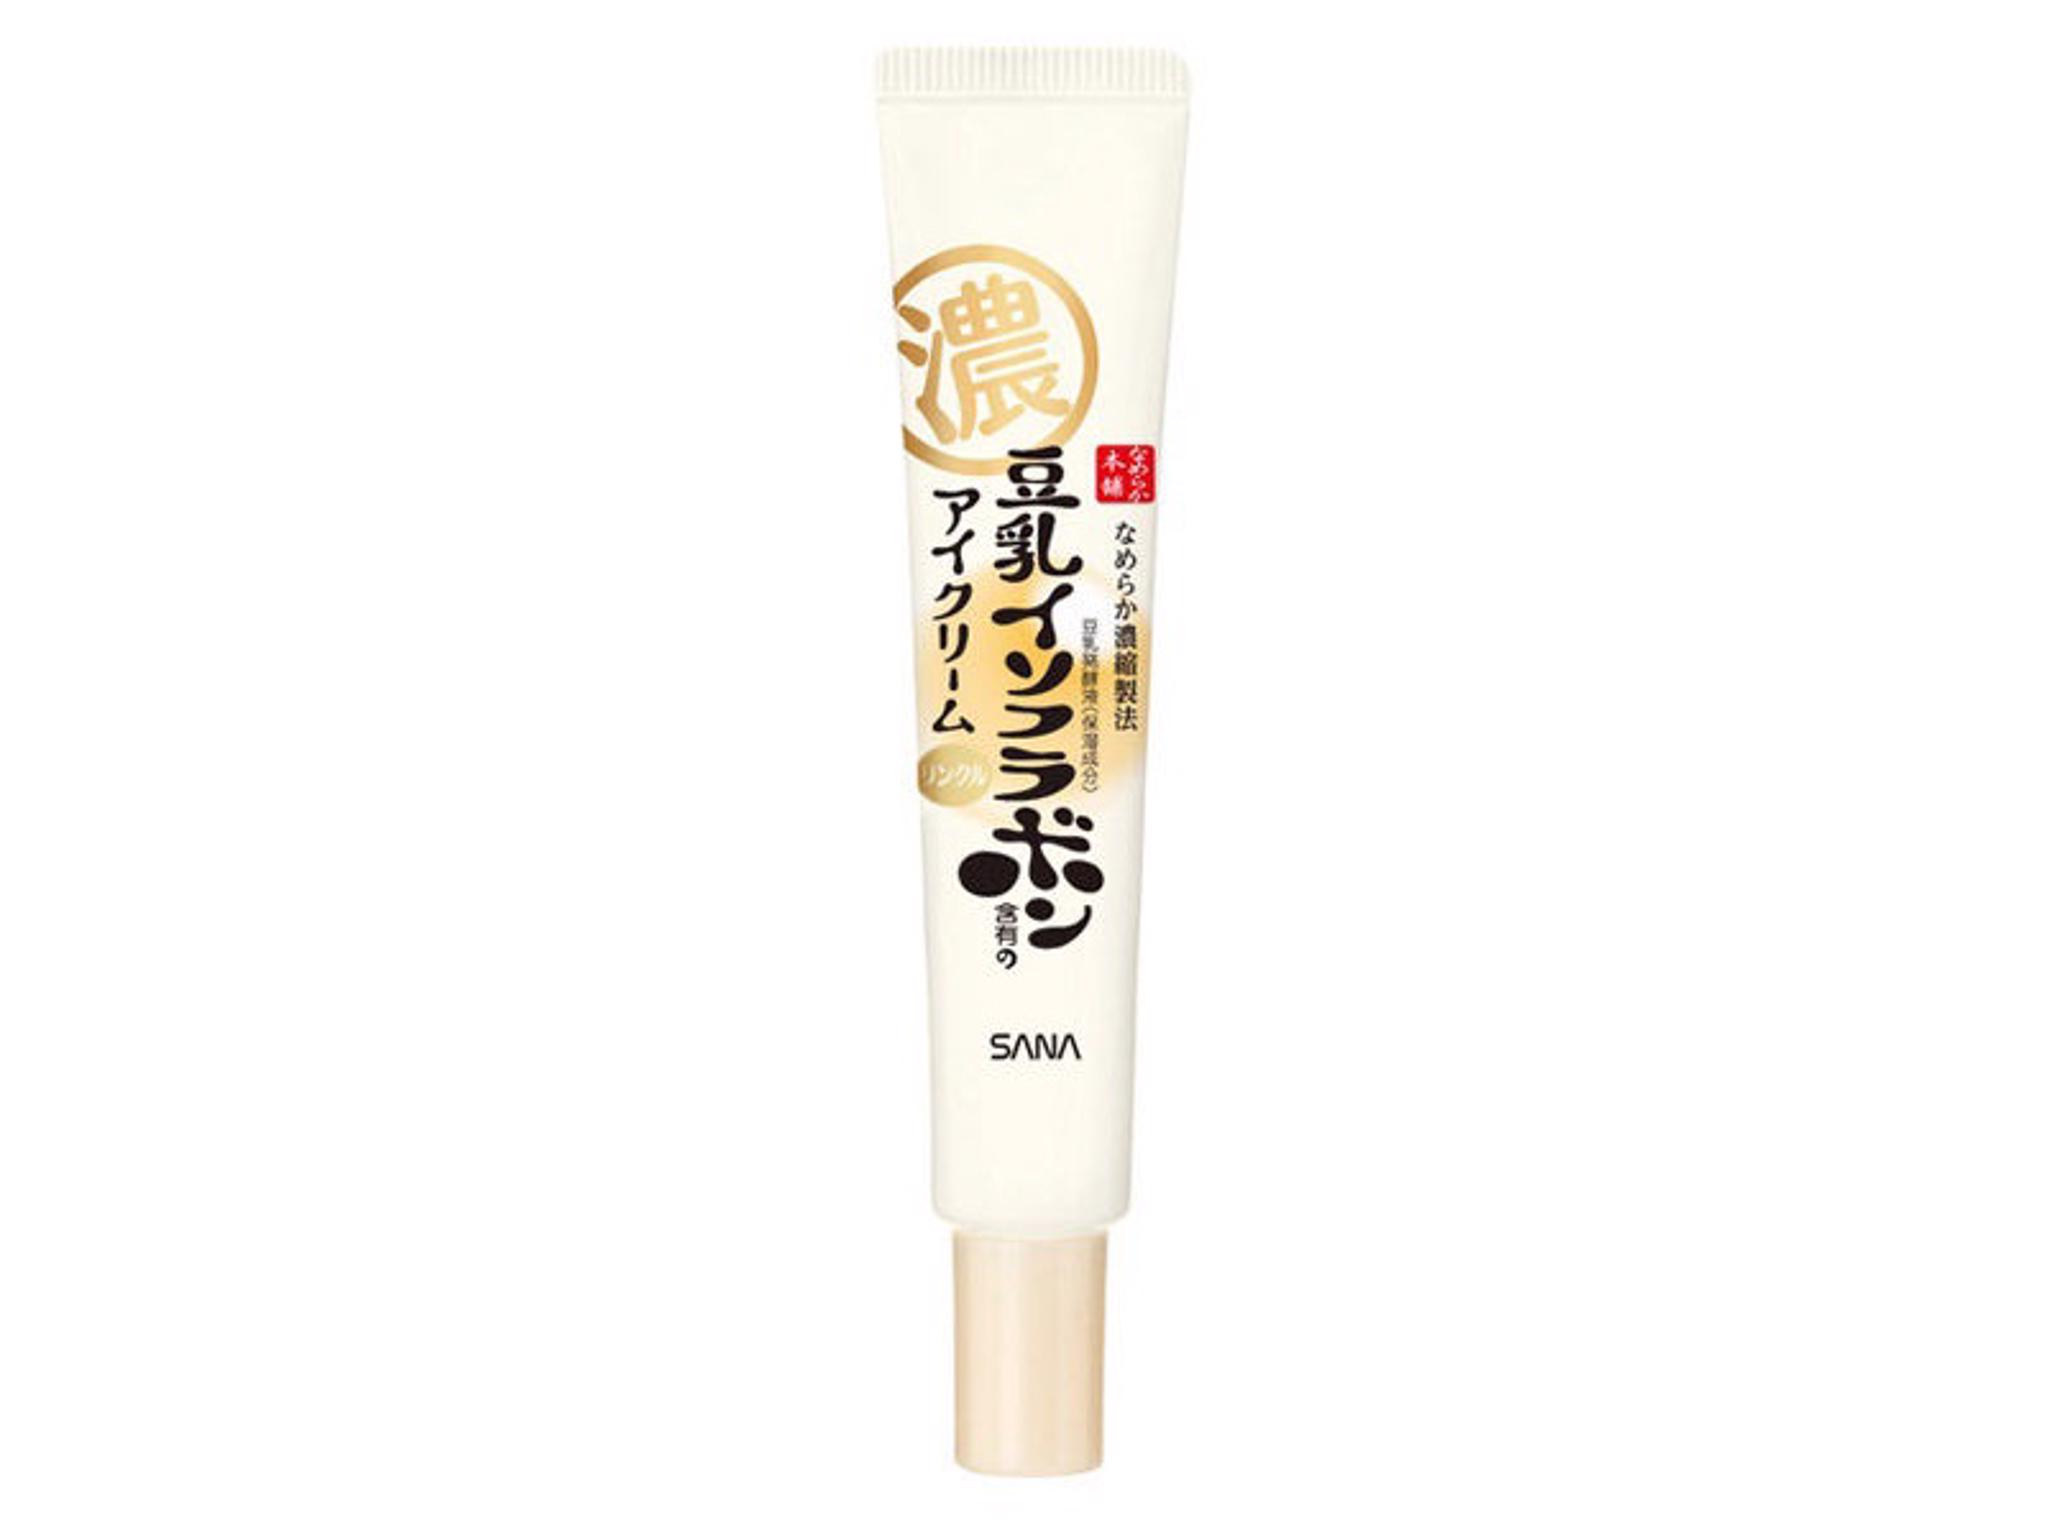 Nameraka Honpo - Wrinkle Eye Cream 3604